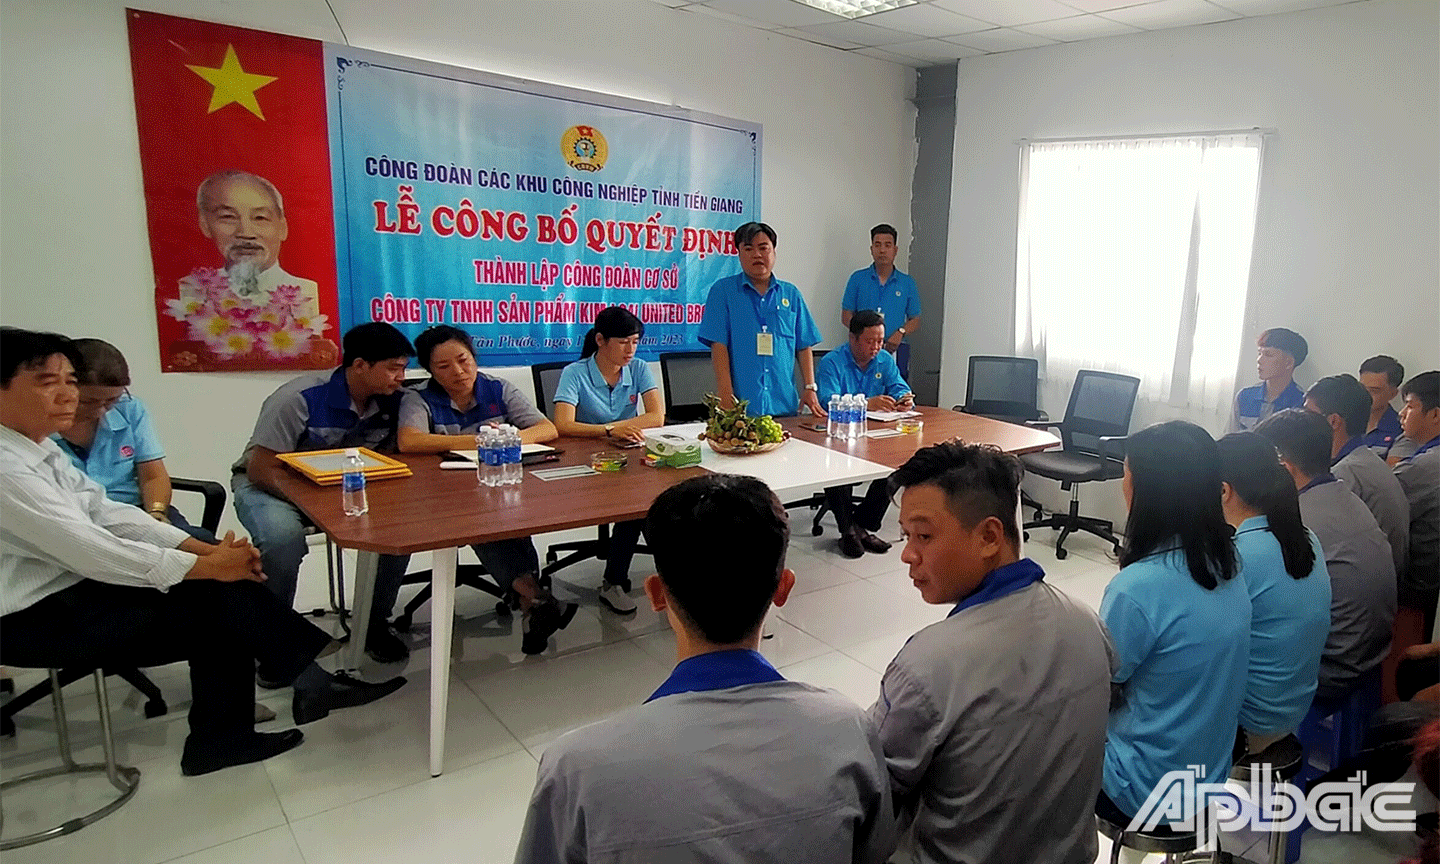 Công đoàn các khu nghiệp tỉnh Tiền Giang phối hợp với Công ty TNHH Sản Phẩm Kim Loại United Brothers tại khu công nghiệp Long Giang, huyện Tân Phước, tỉnh Tiền Giang 